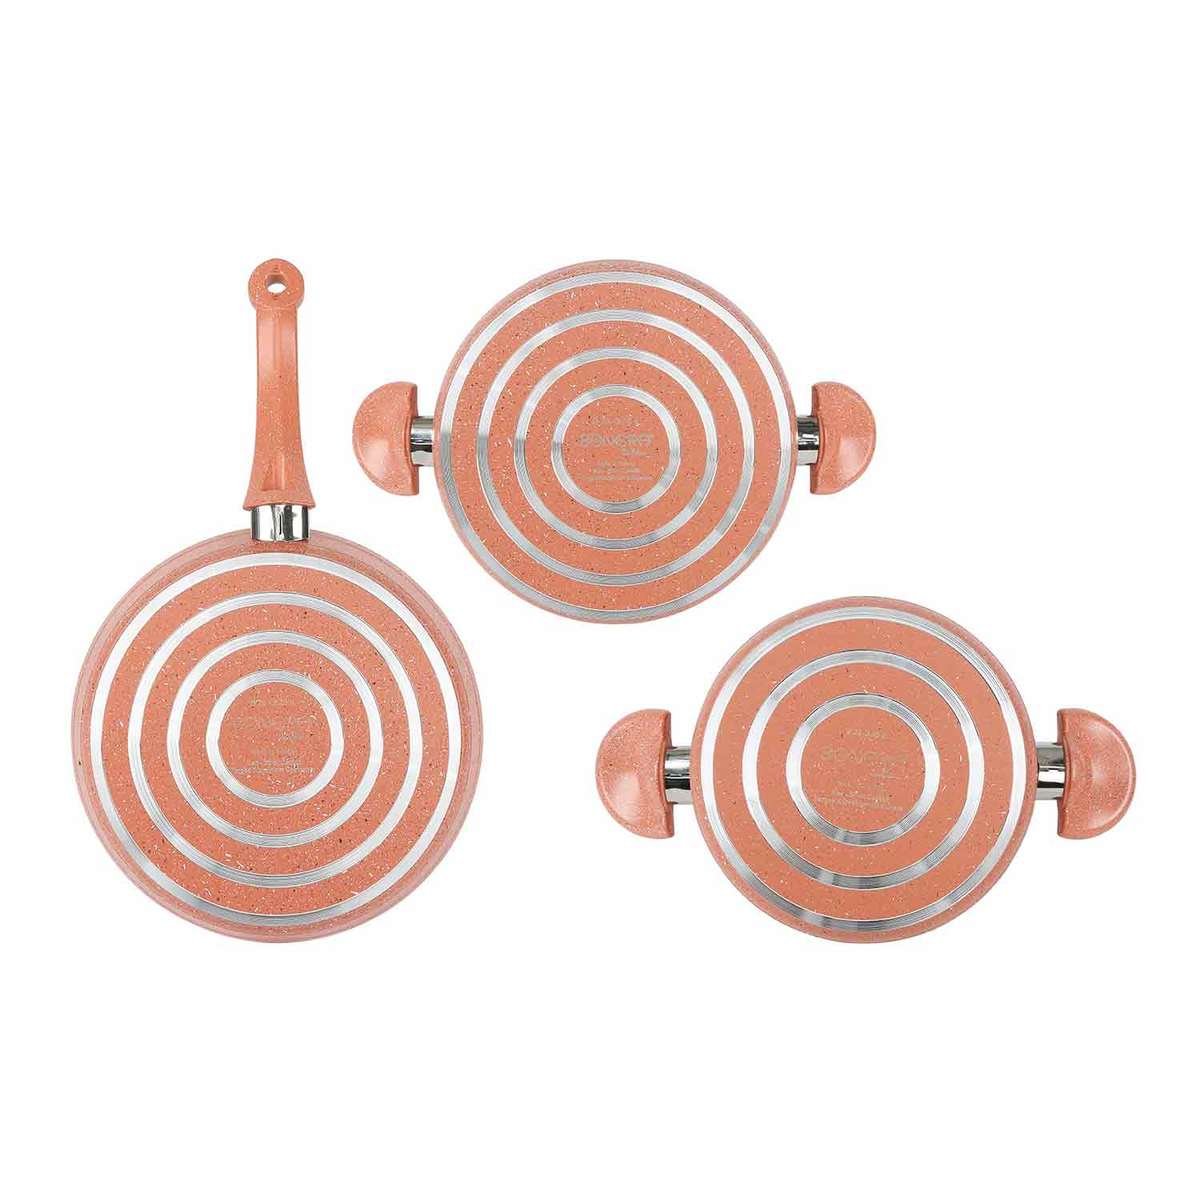 Bonera Granite Cookware Set 5pcs Assorted Color